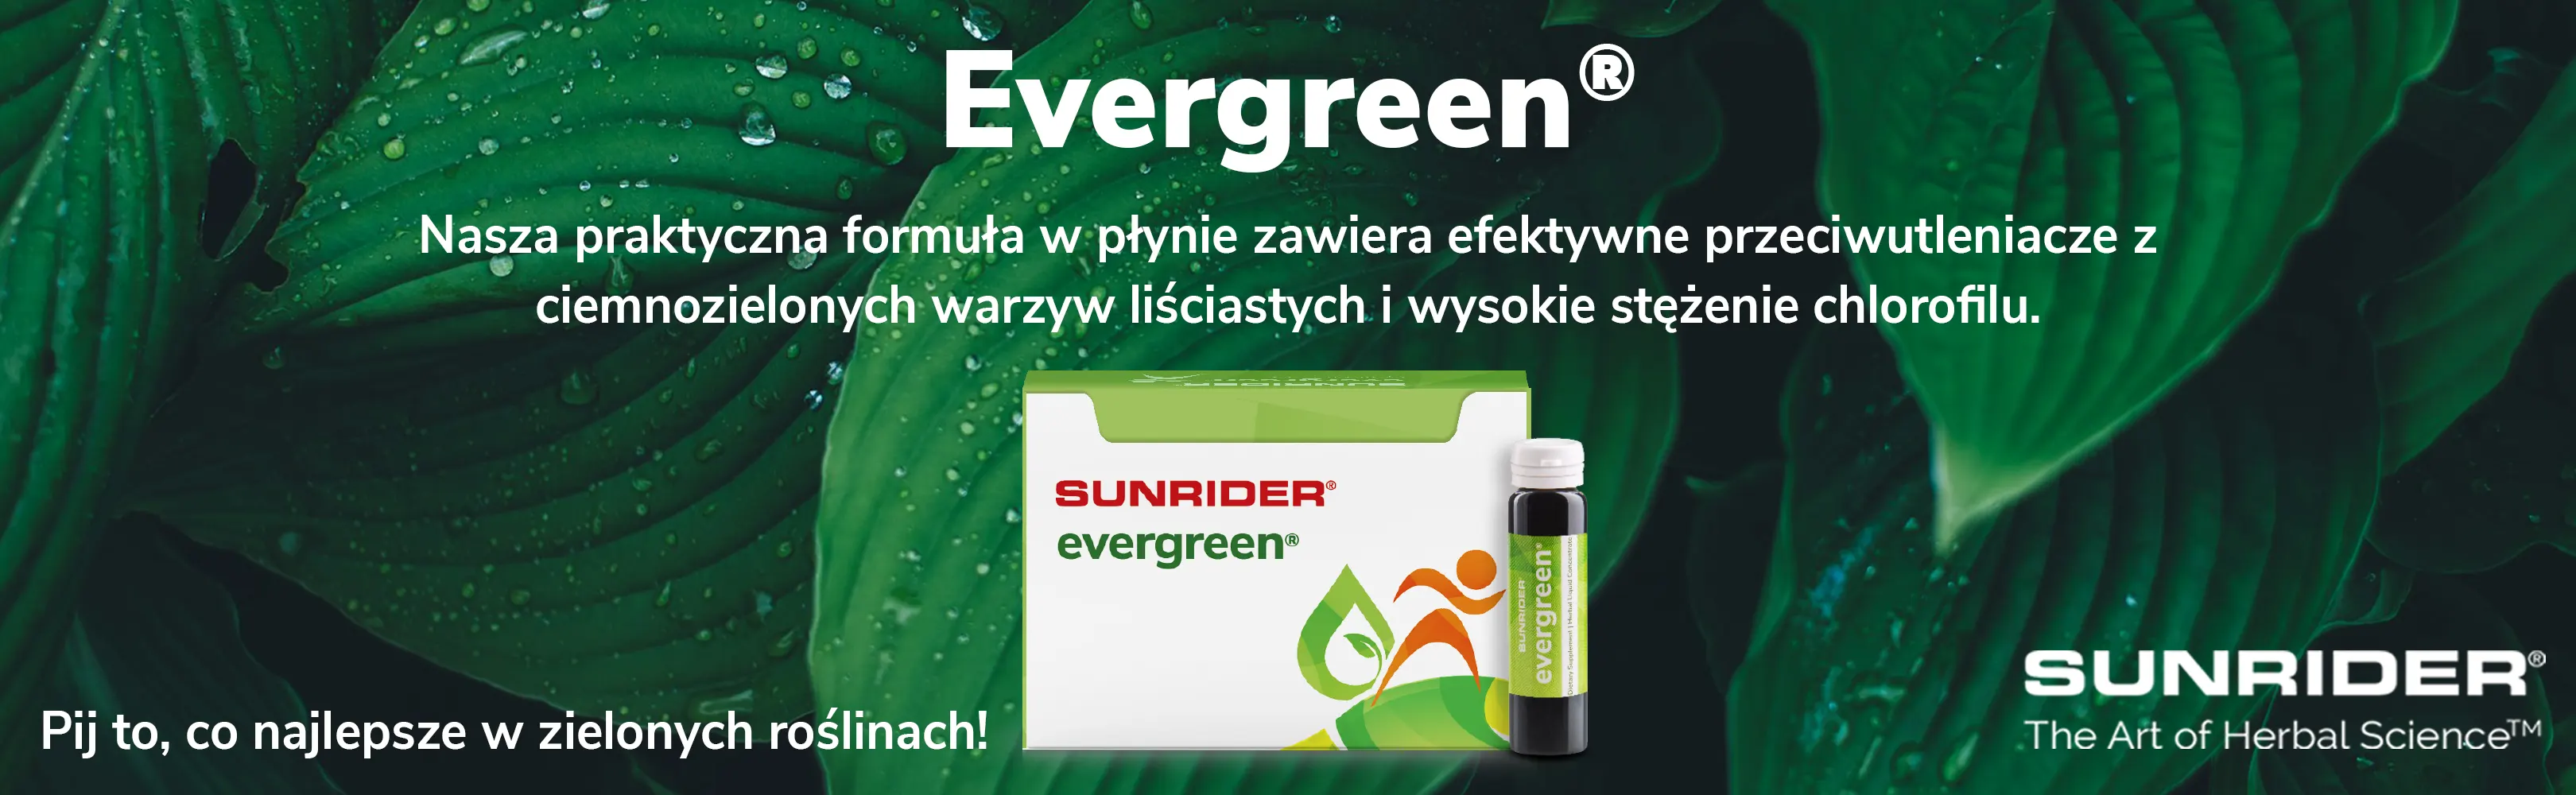 HU] Evergreen banner PL